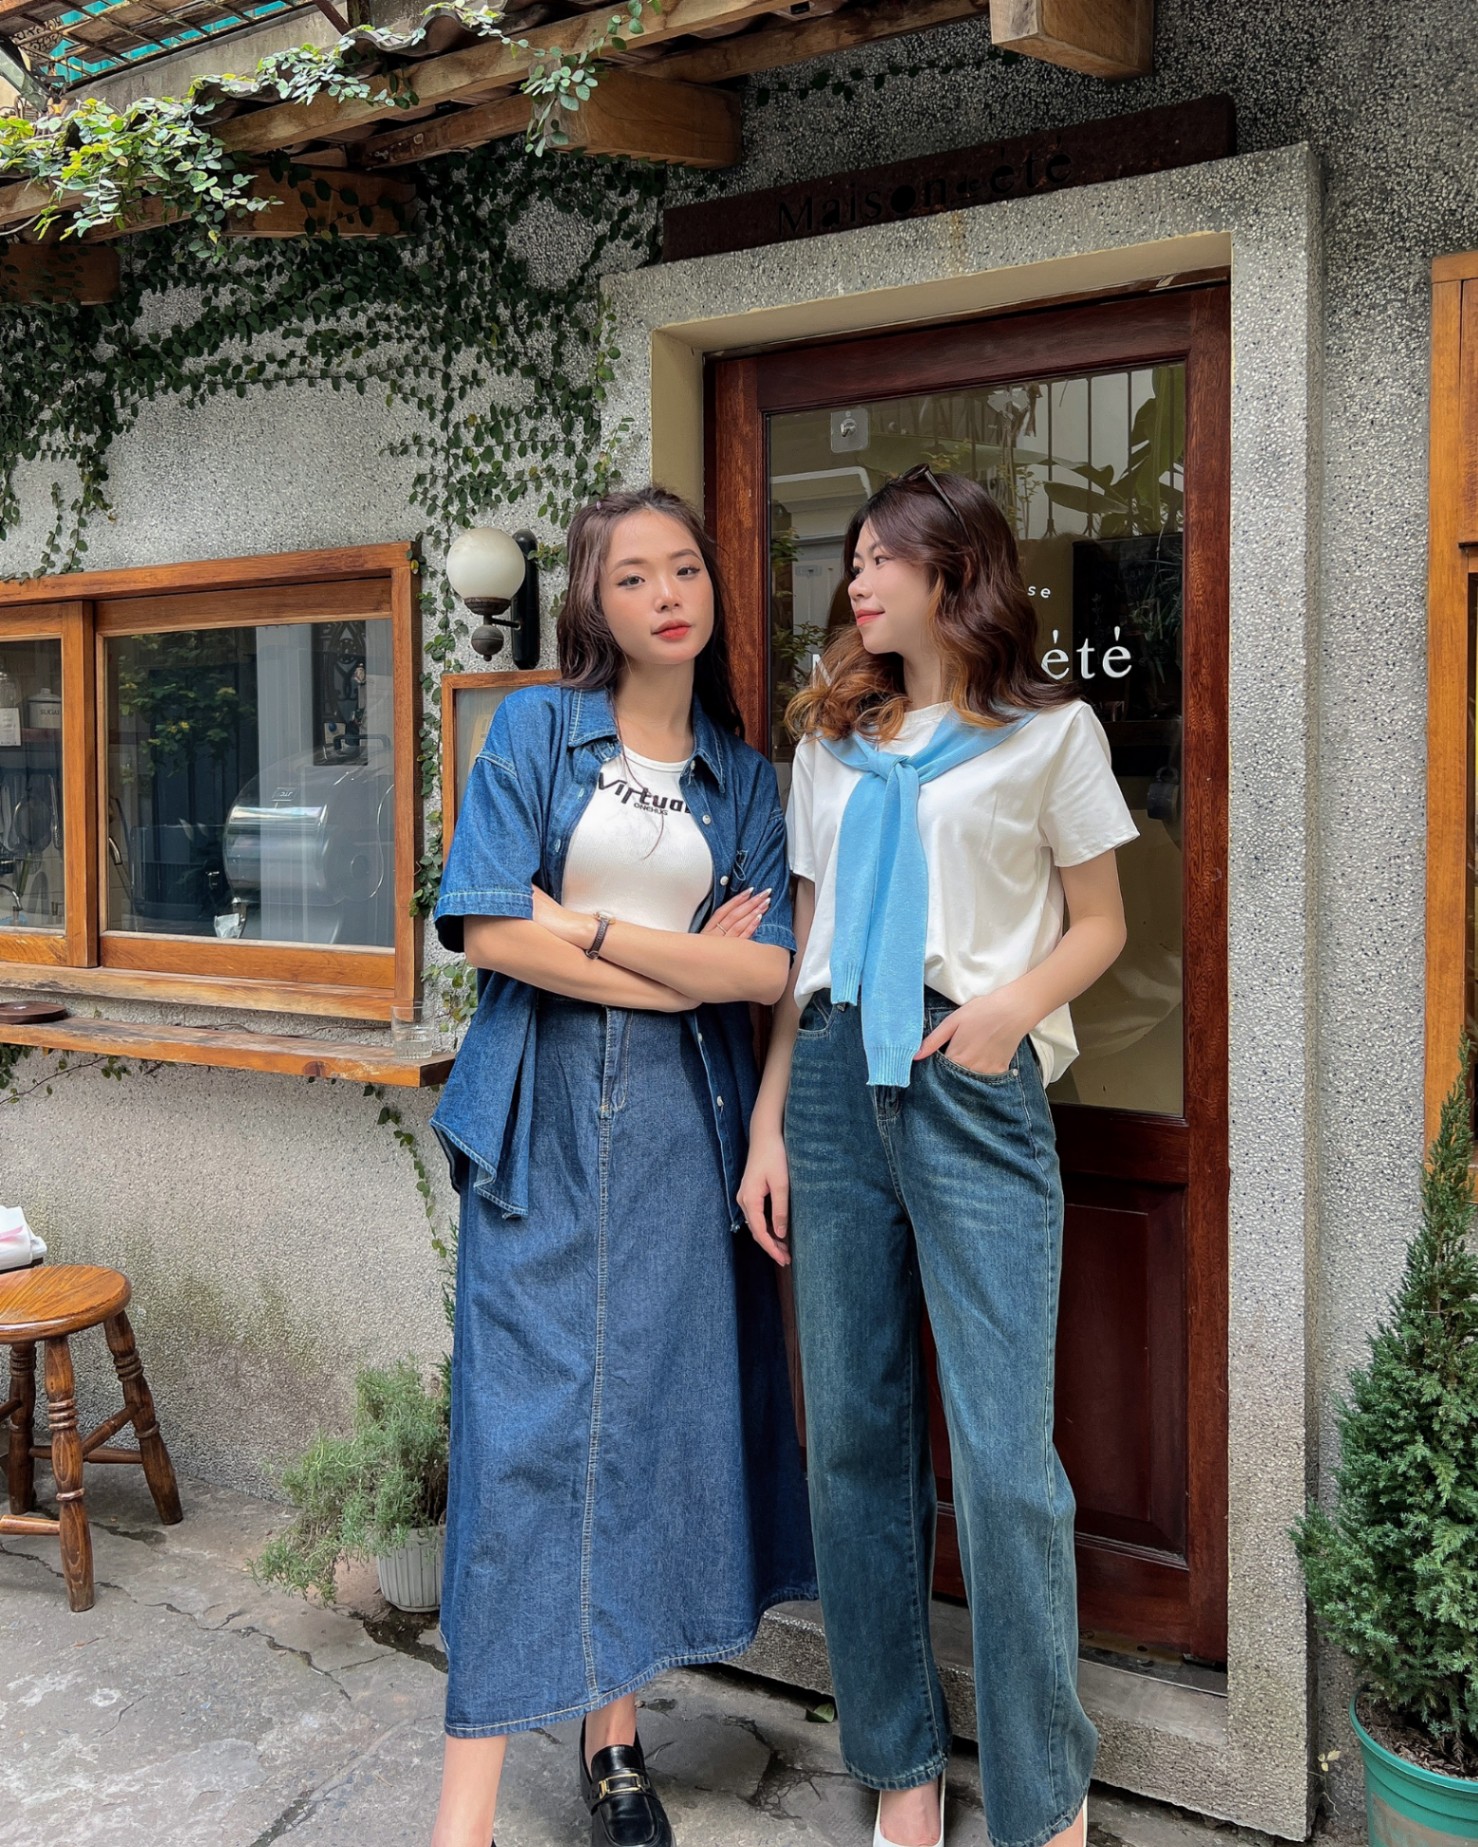 Shop quần áo nữ đẹp Bắc Giang Hà Nội thời trang Hàn Quốc 2021